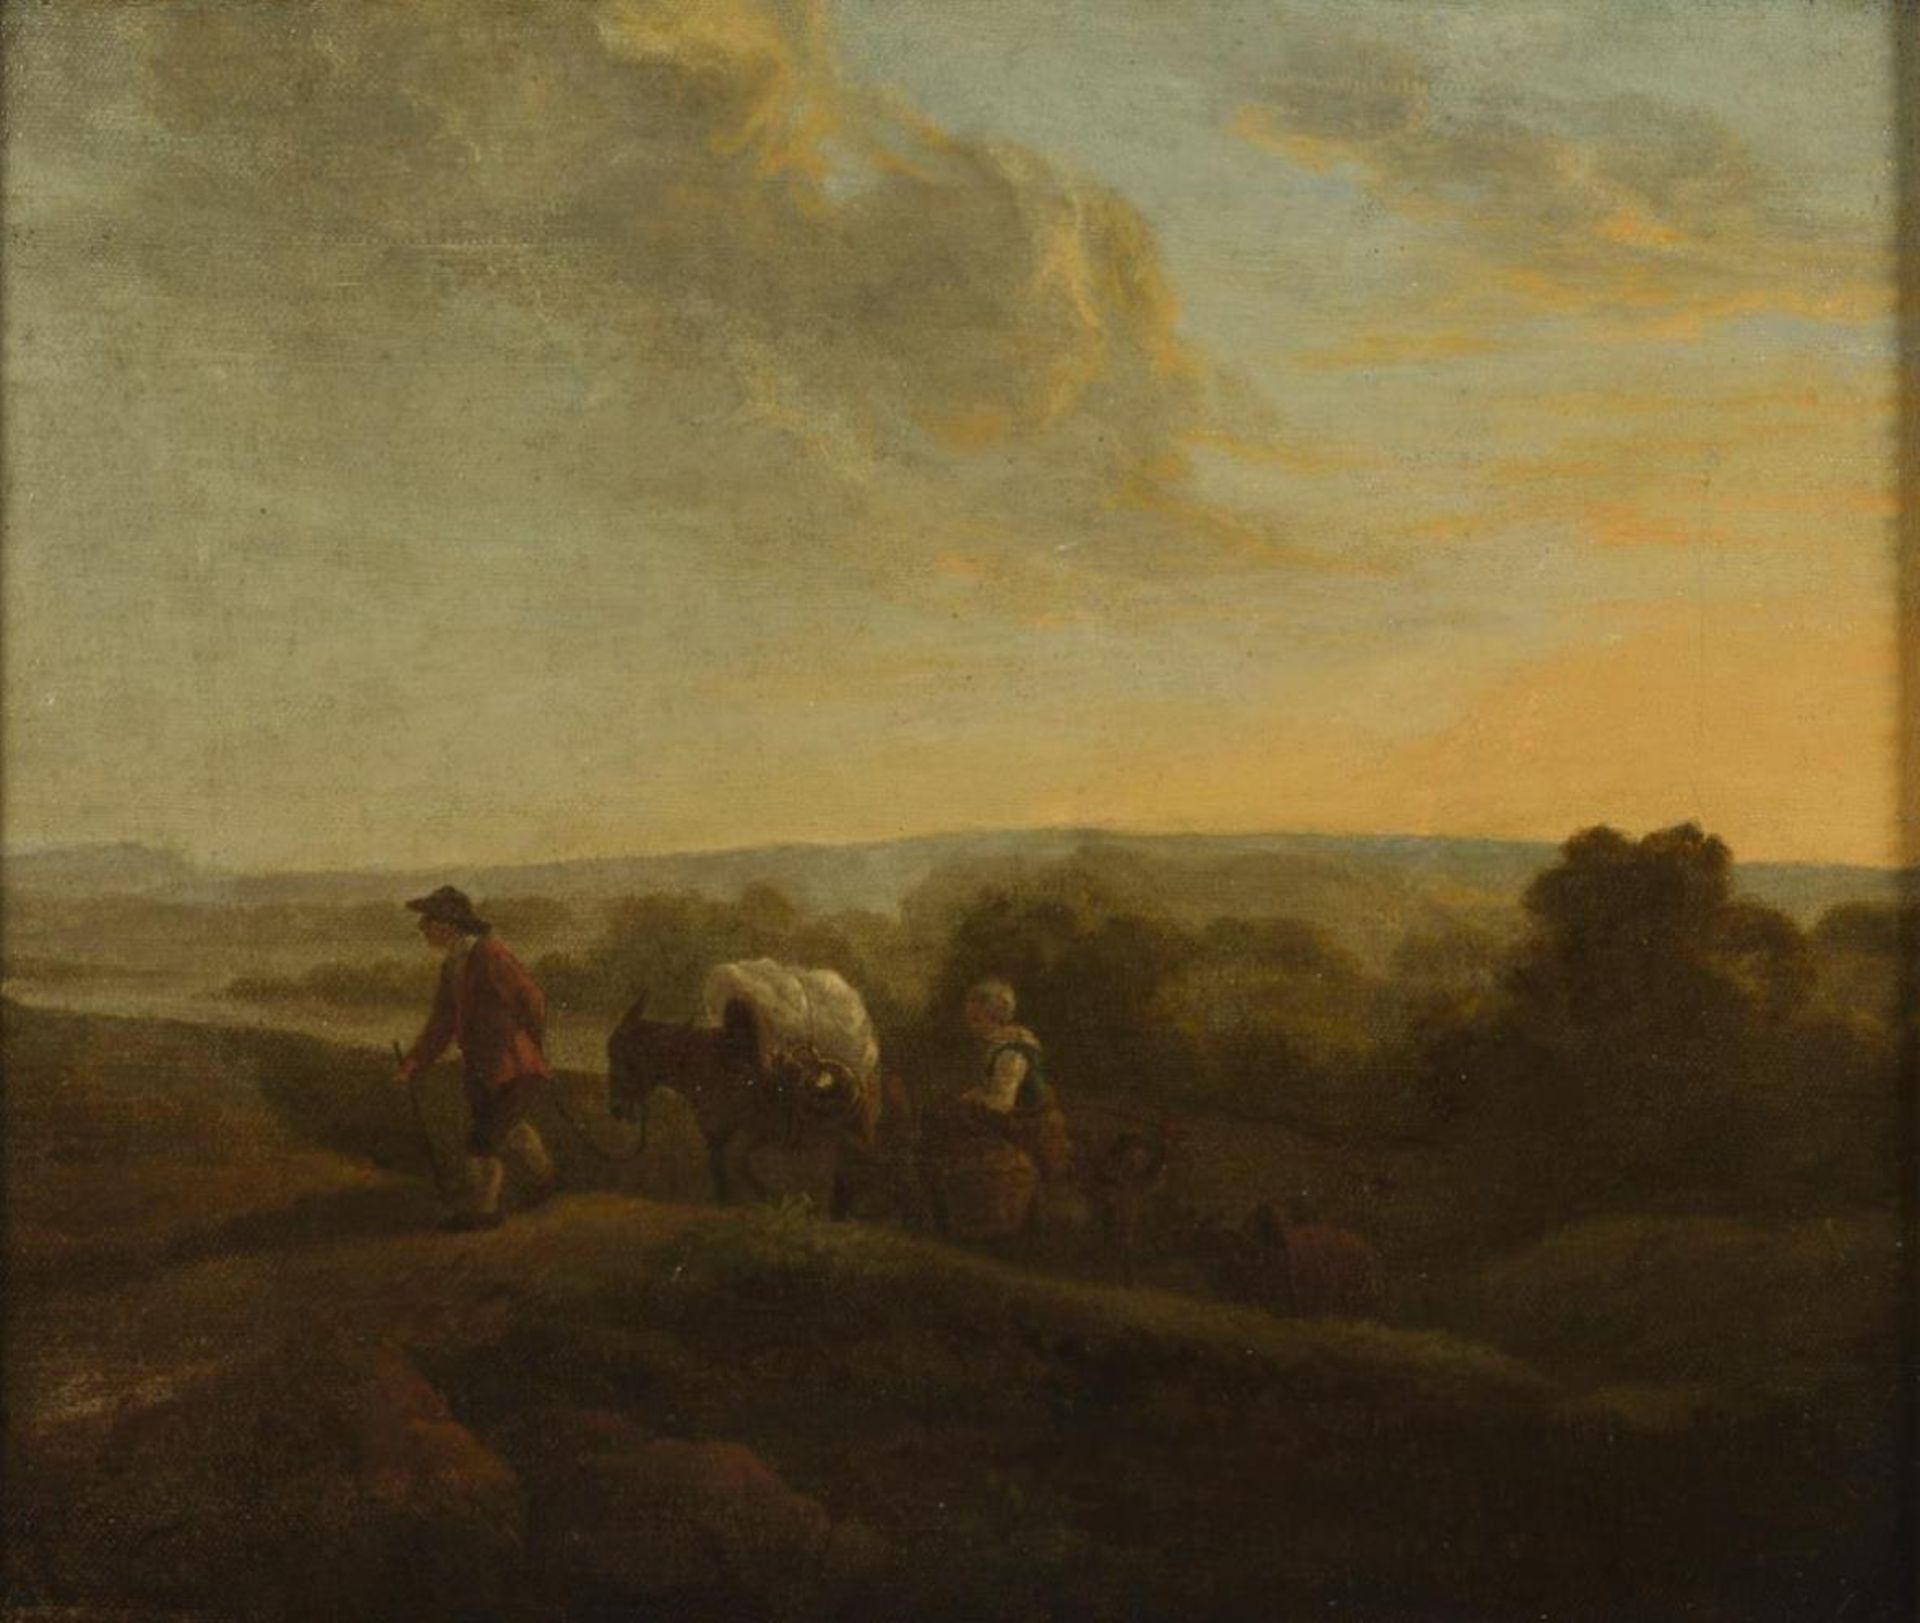 Barocker Maler: Bauernfamilie in abendlicher Landschaft